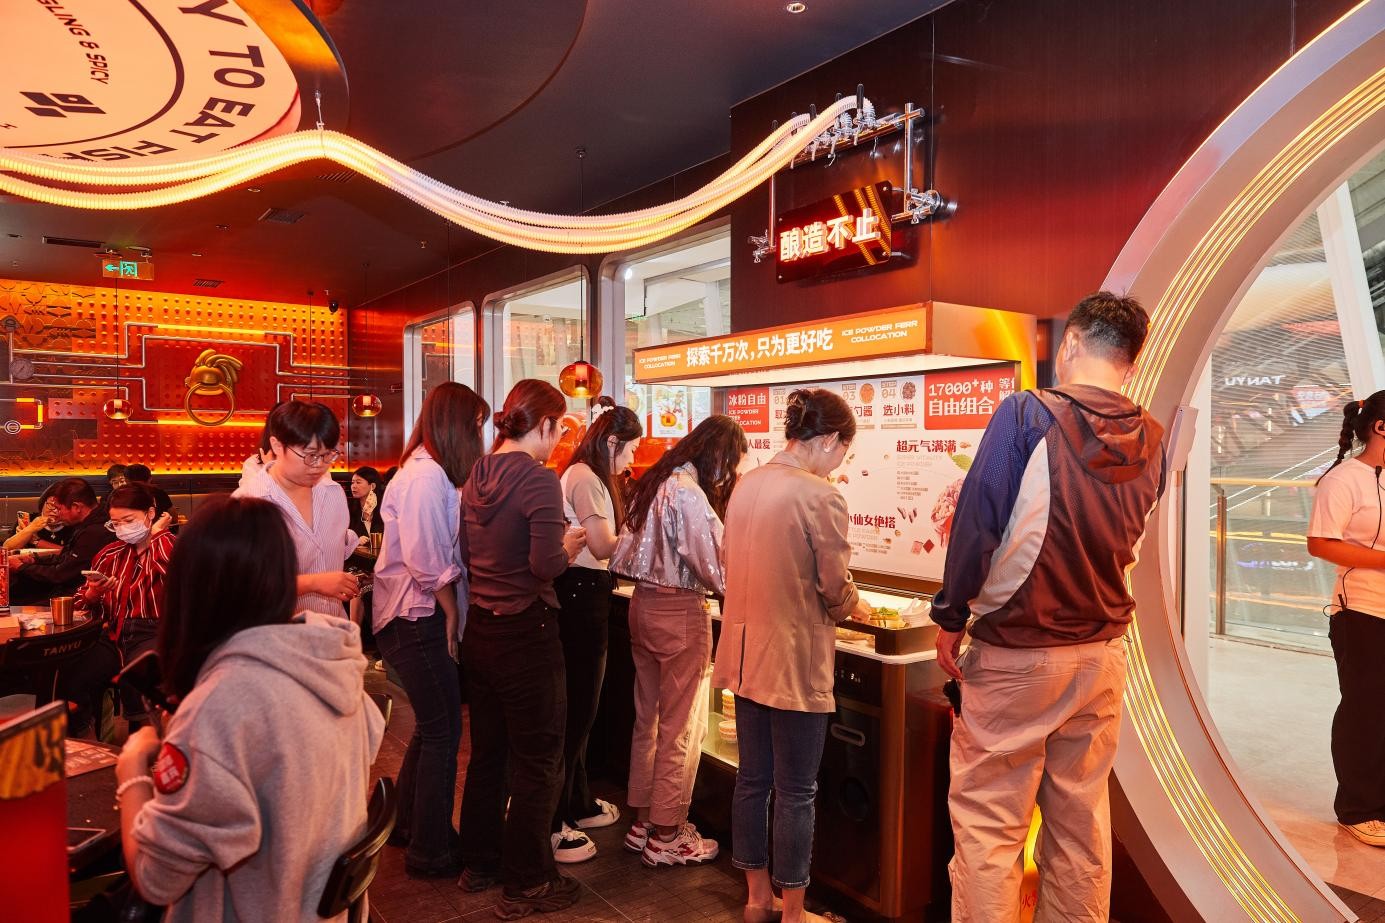 探鱼加码区域化营销：新店融合北京文化元素，特色烤鱼正式上新